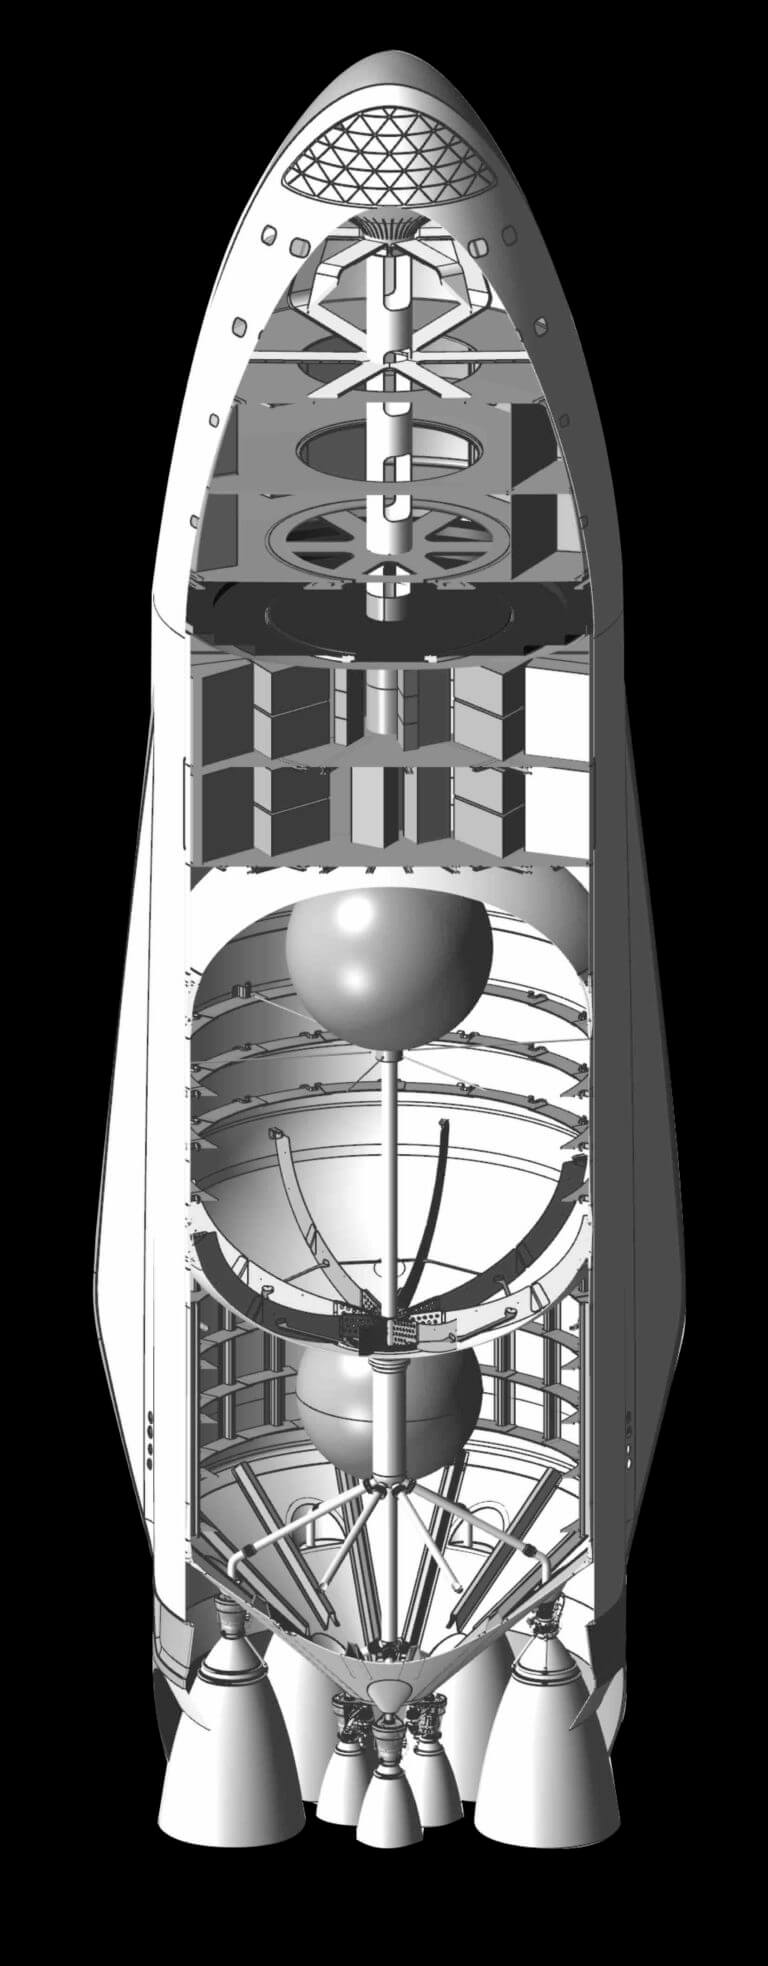 RU61681U1 - Многоступенчатая ракета-носитель - Google Patents